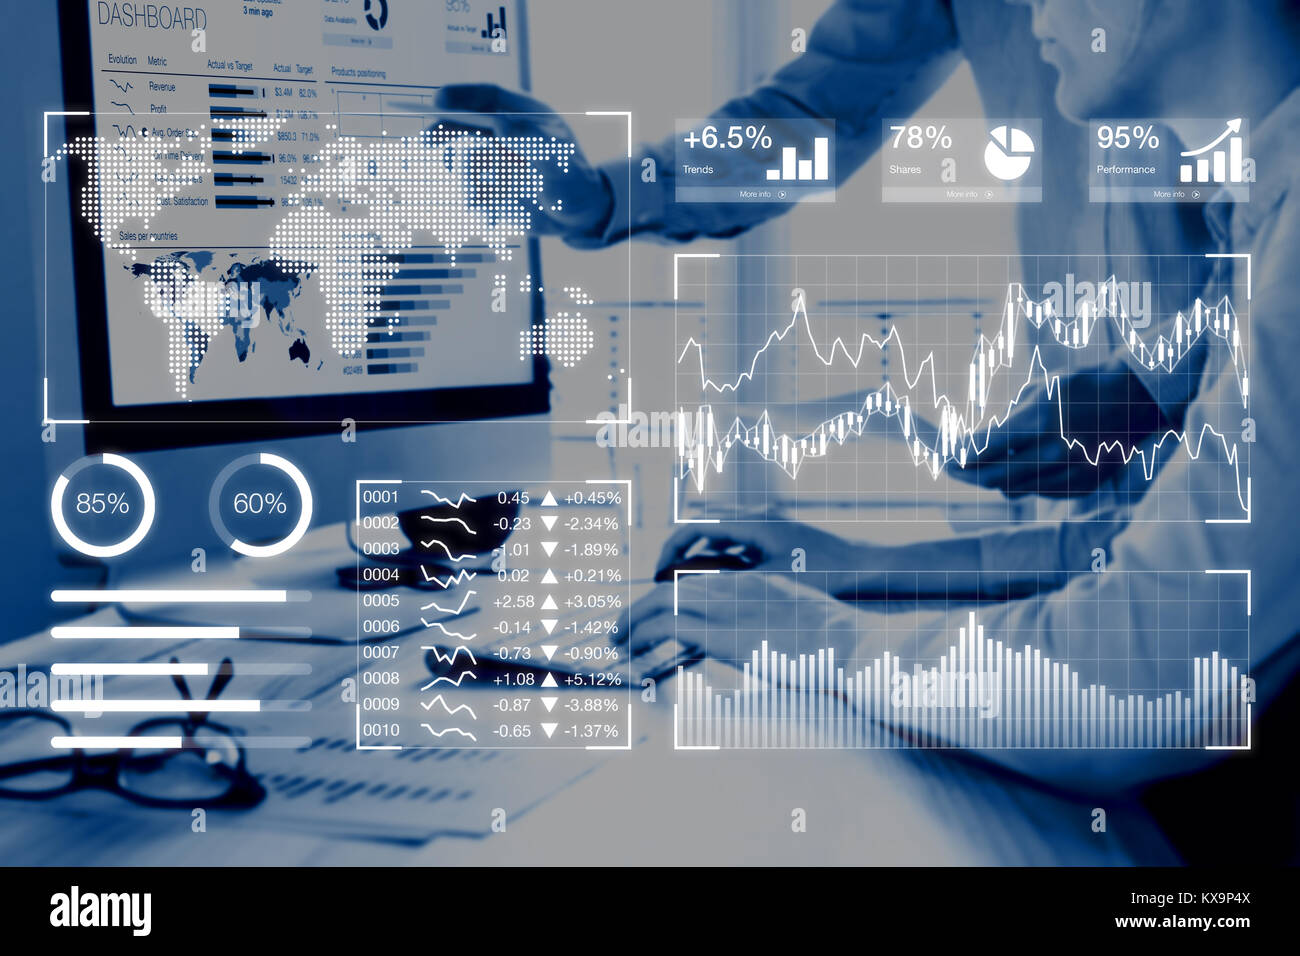 Business Analytics dashboard concepto informes con indicadores clave de rendimiento (KPI) y dos personas analizando los datos de ventas o de marketing digital en la compu Foto de stock